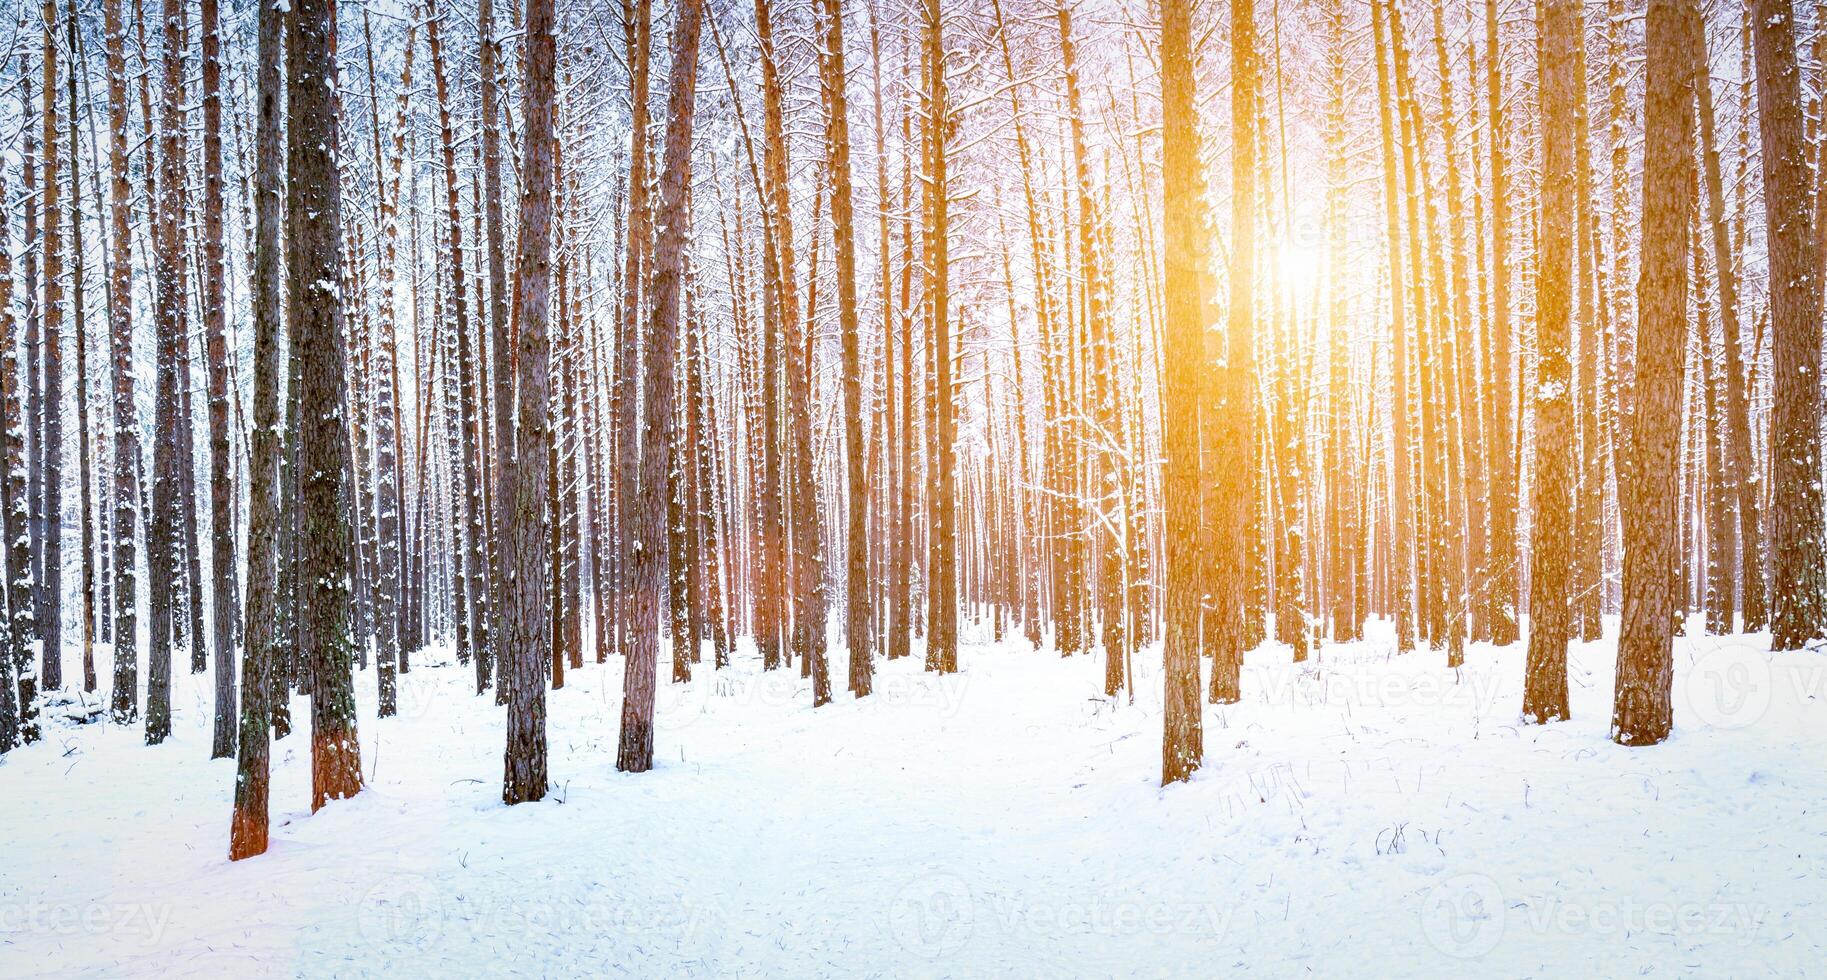 zonnestralen strepen door pijnboom boomstammen in een winter pijnboom Woud na een sneeuwval Bij zonsopkomst. foto